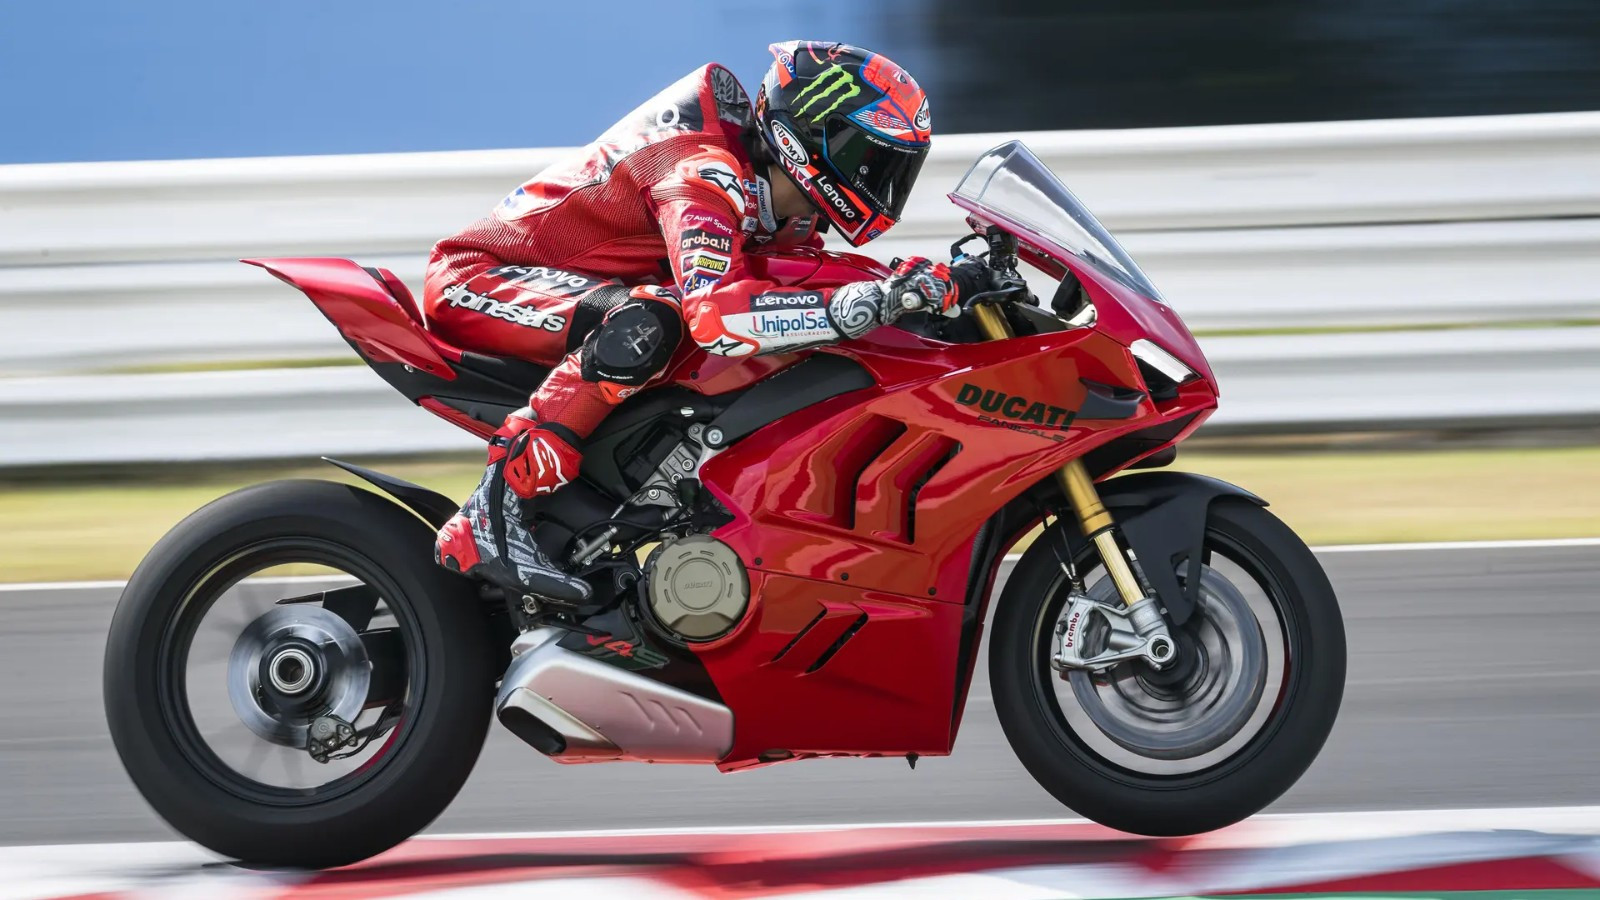 Новый супербайк Ducati получил мощность более 240 лошадиных сил